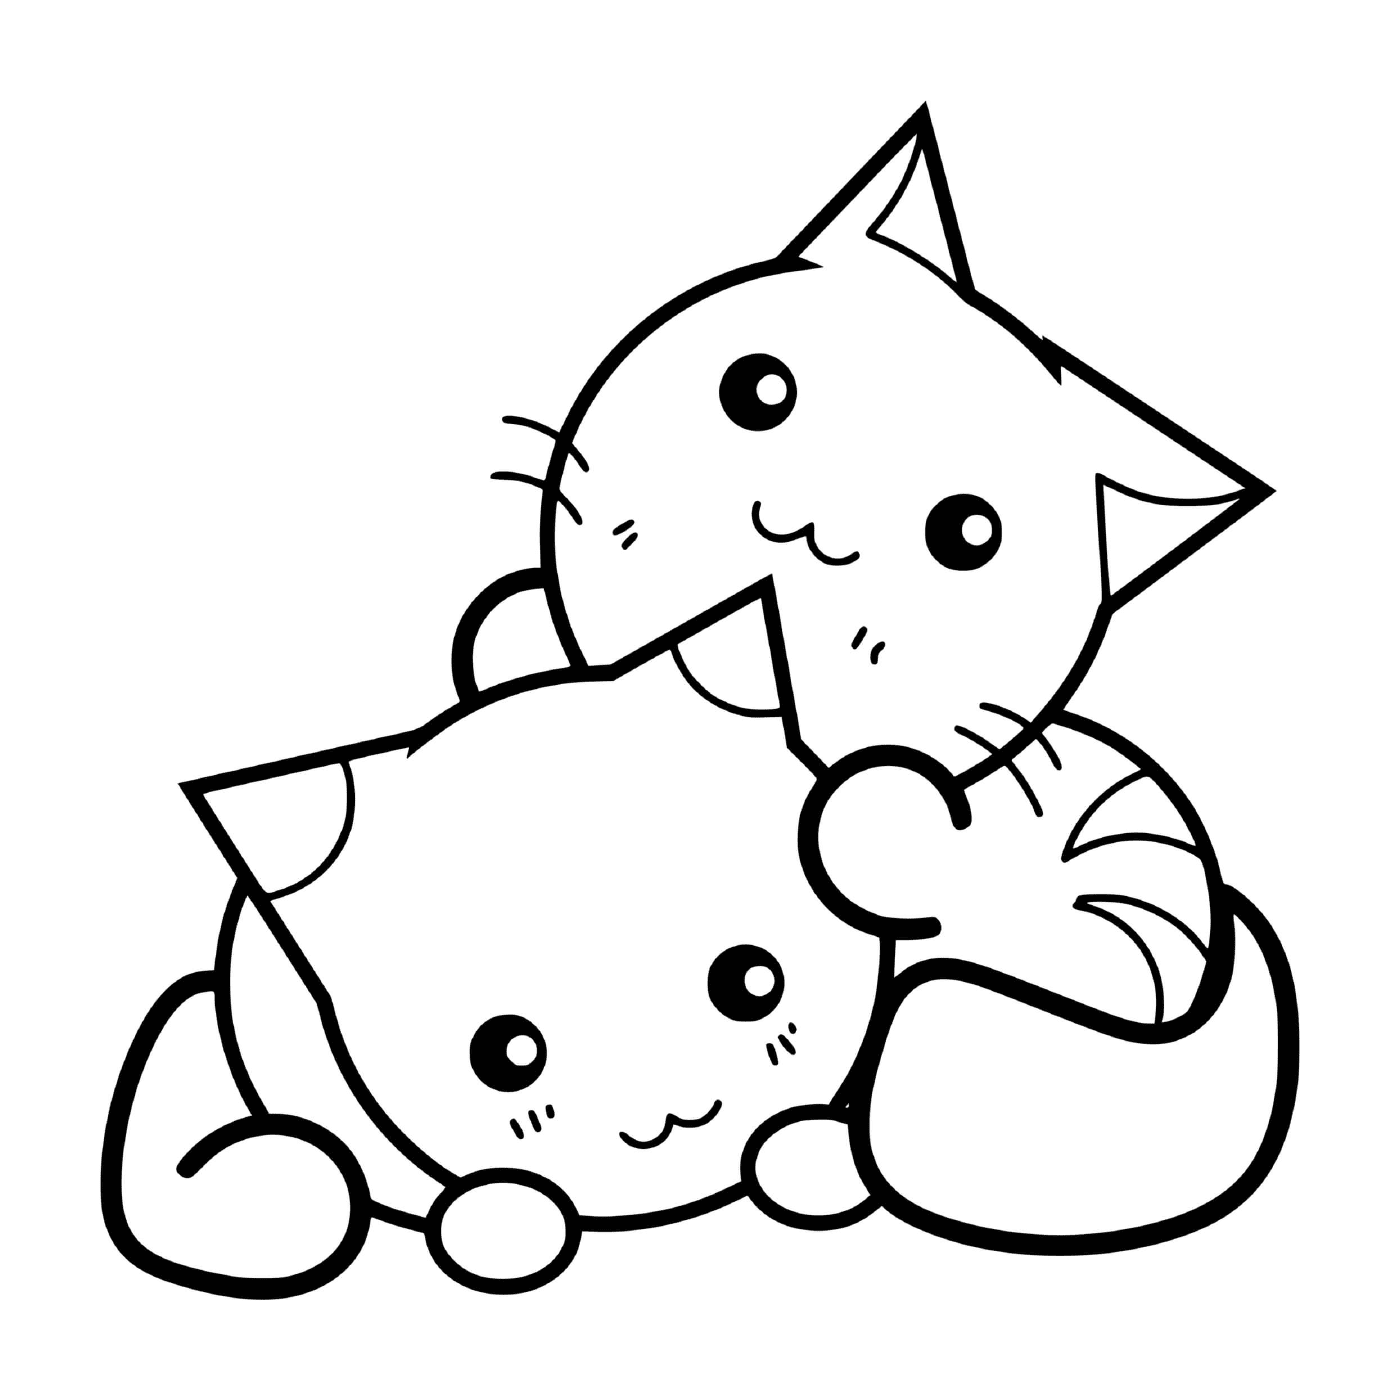  Eine niedliche Katze und Kätzchen, die sich gegenseitig umarmen 